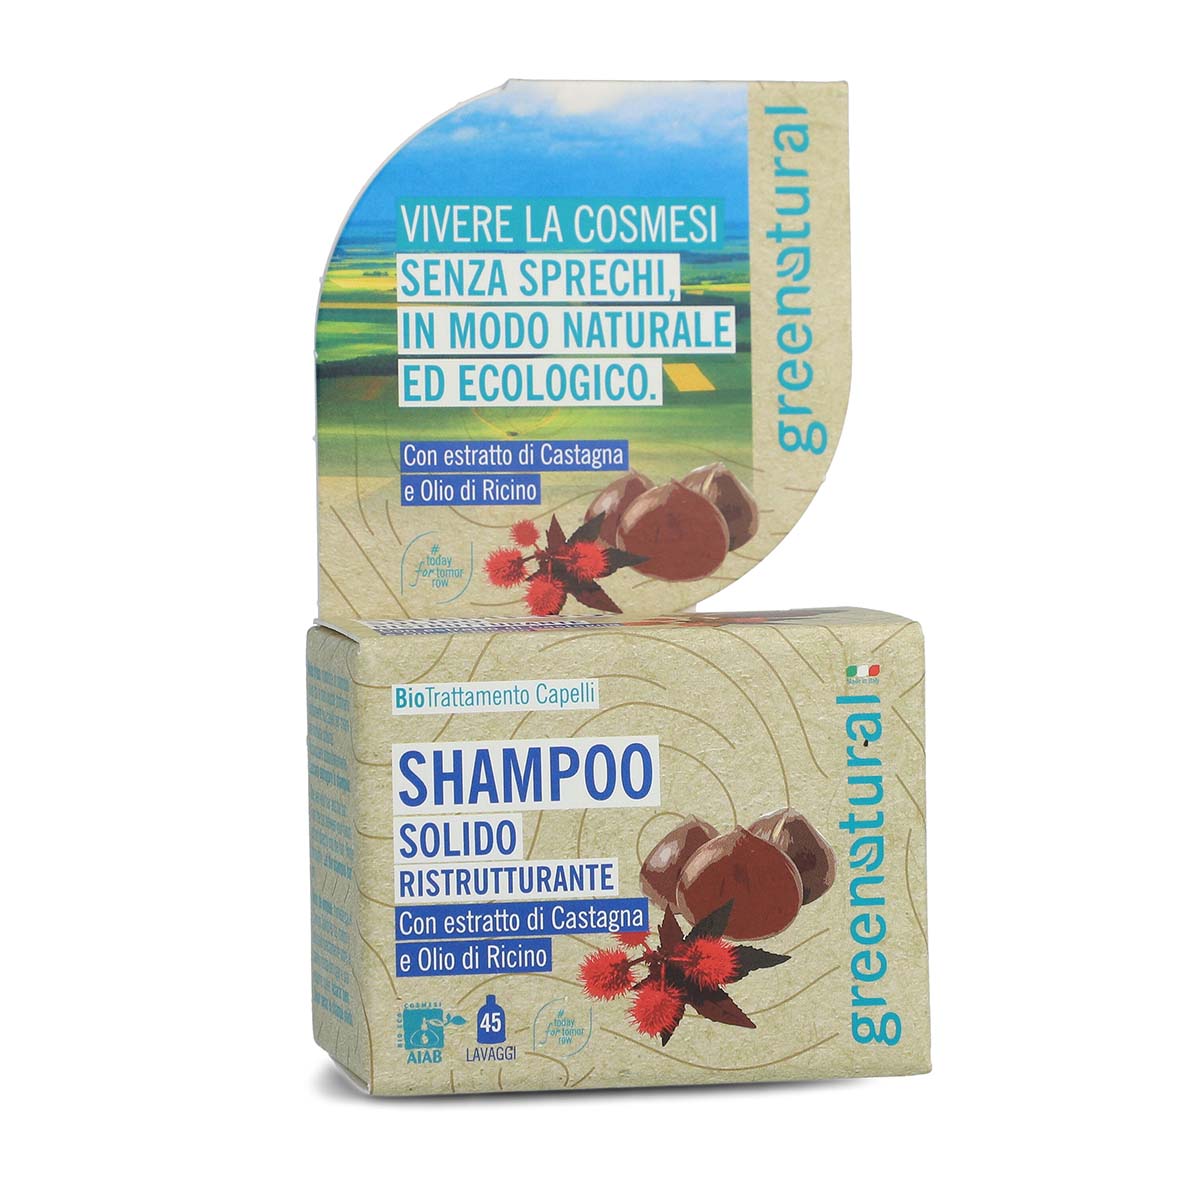 Shampoo Solido Ristrutturante